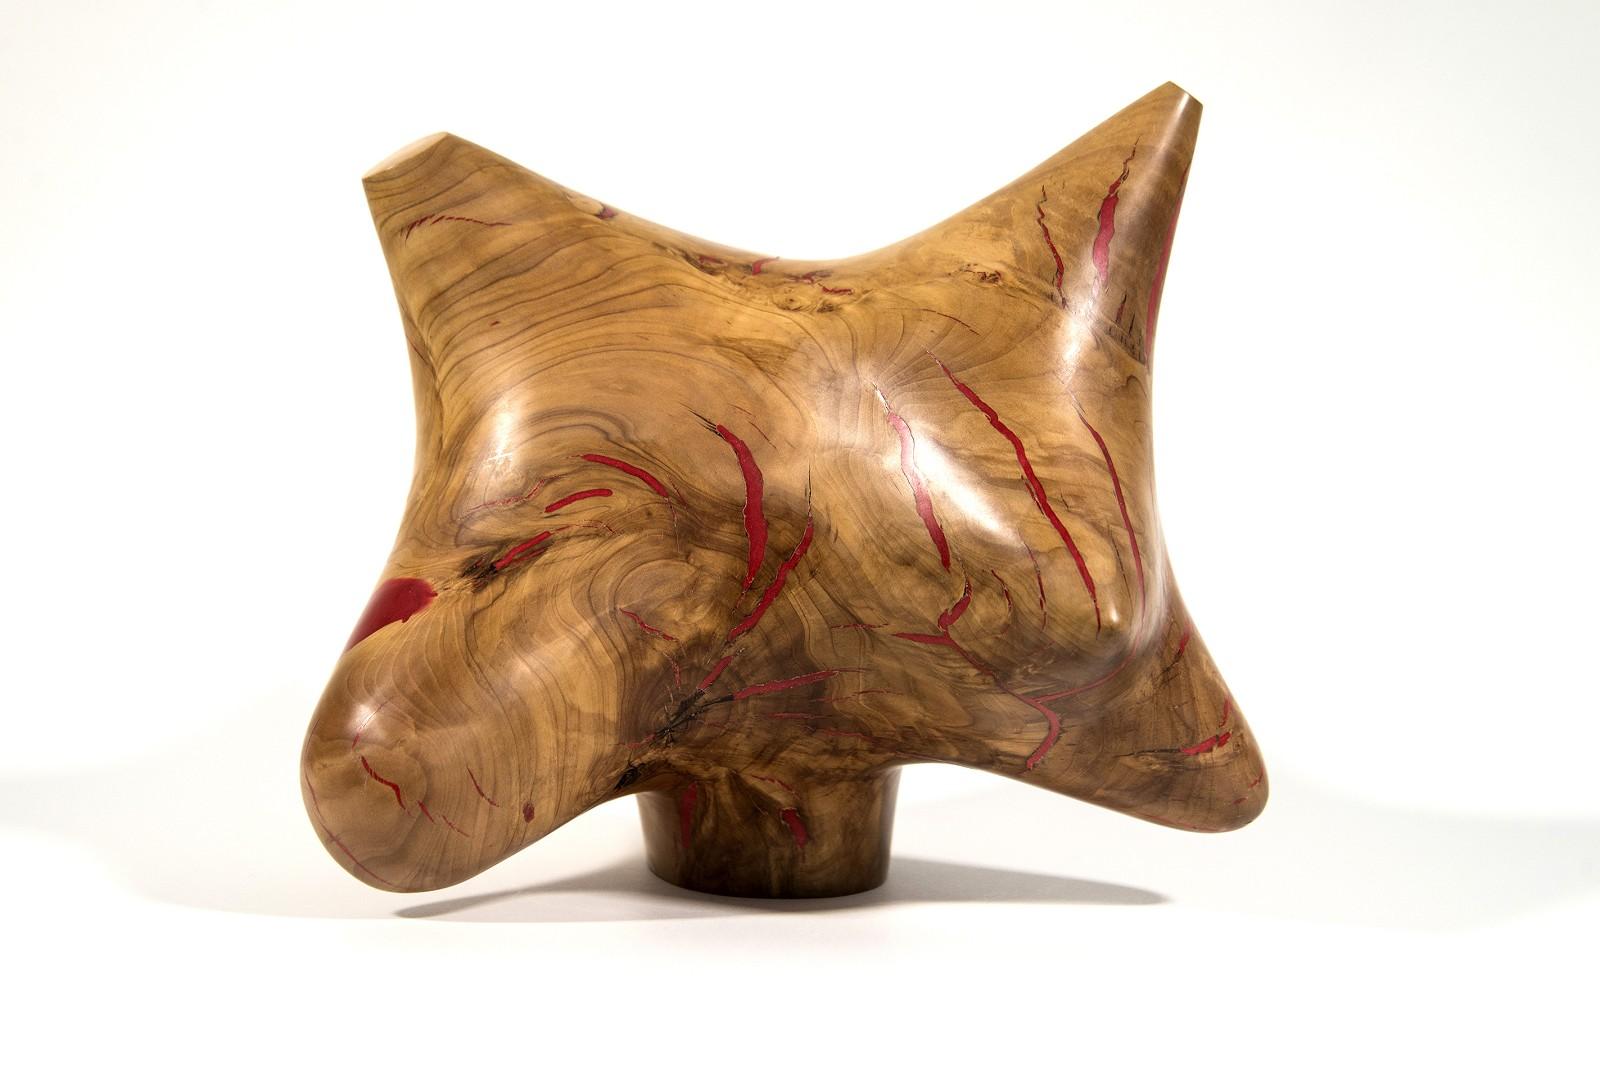 Abstract Sculpture Shayne Dark - Série Windfall II n° 9 - sculpture lisse, sculptée, abstraite, en bois de pomme et résine